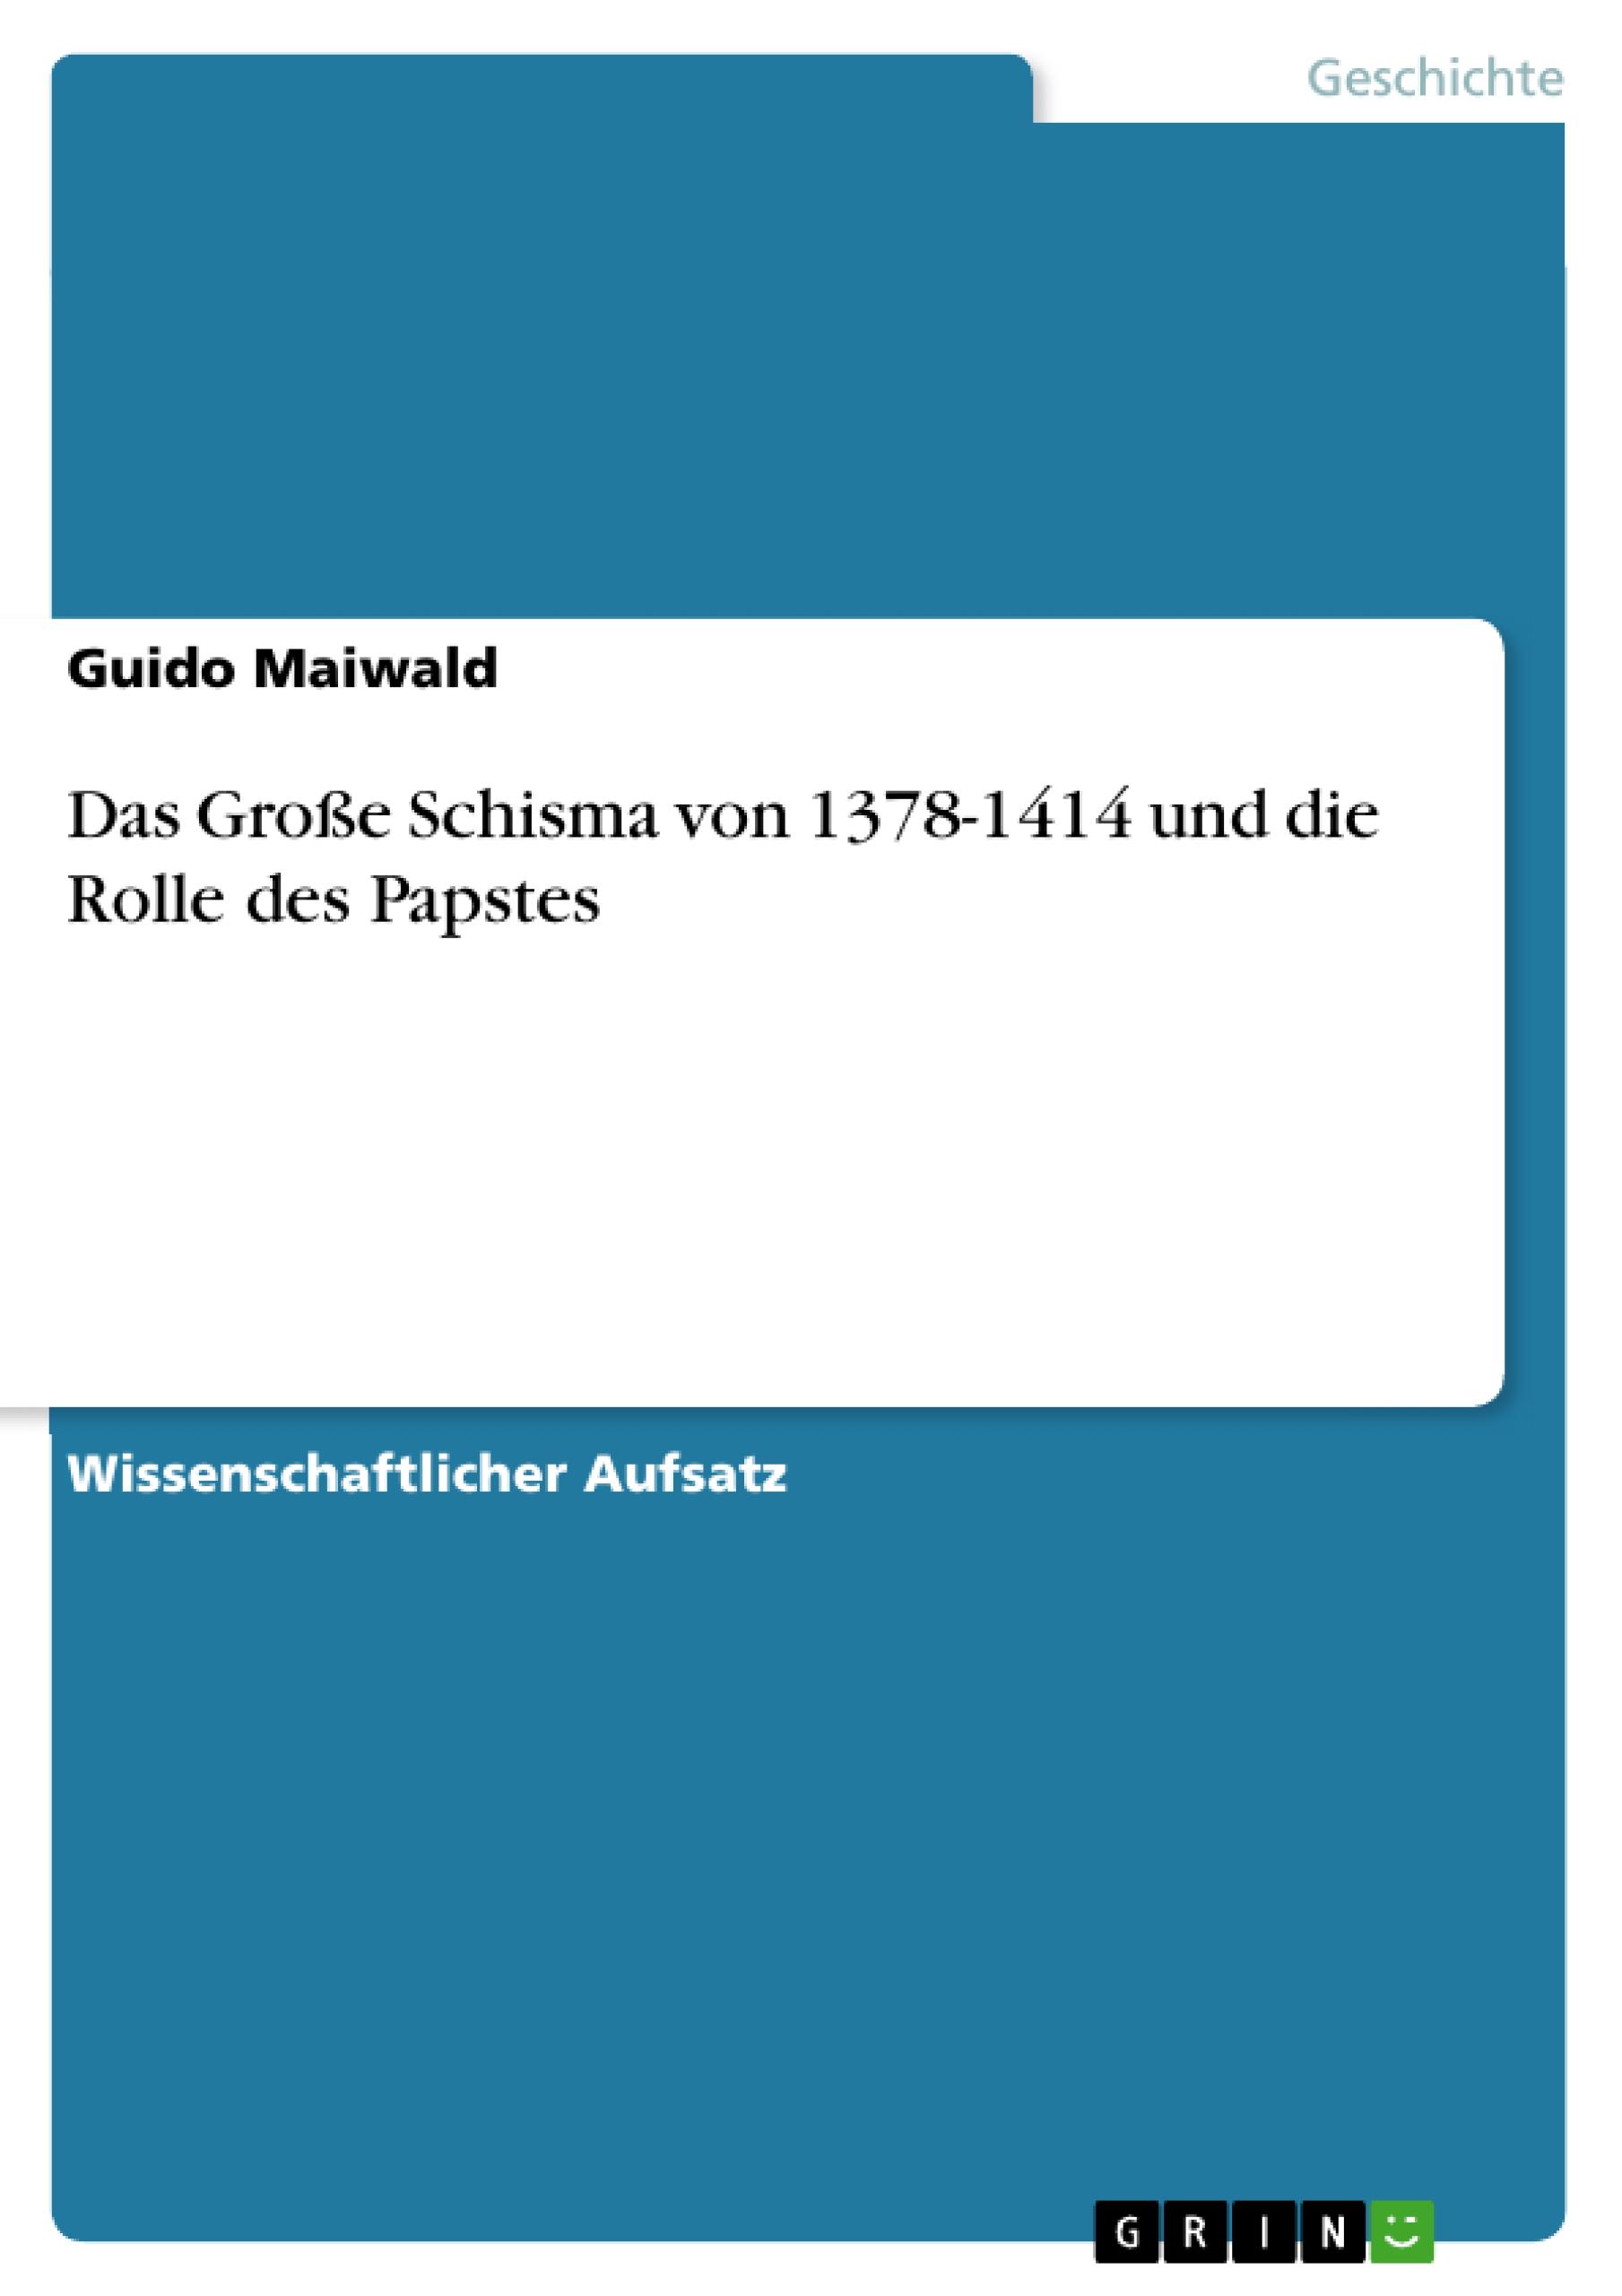 Das GroÃŸe Schisma von 1378-1414 und die Rolle des Papstes - Maiwald, Guido